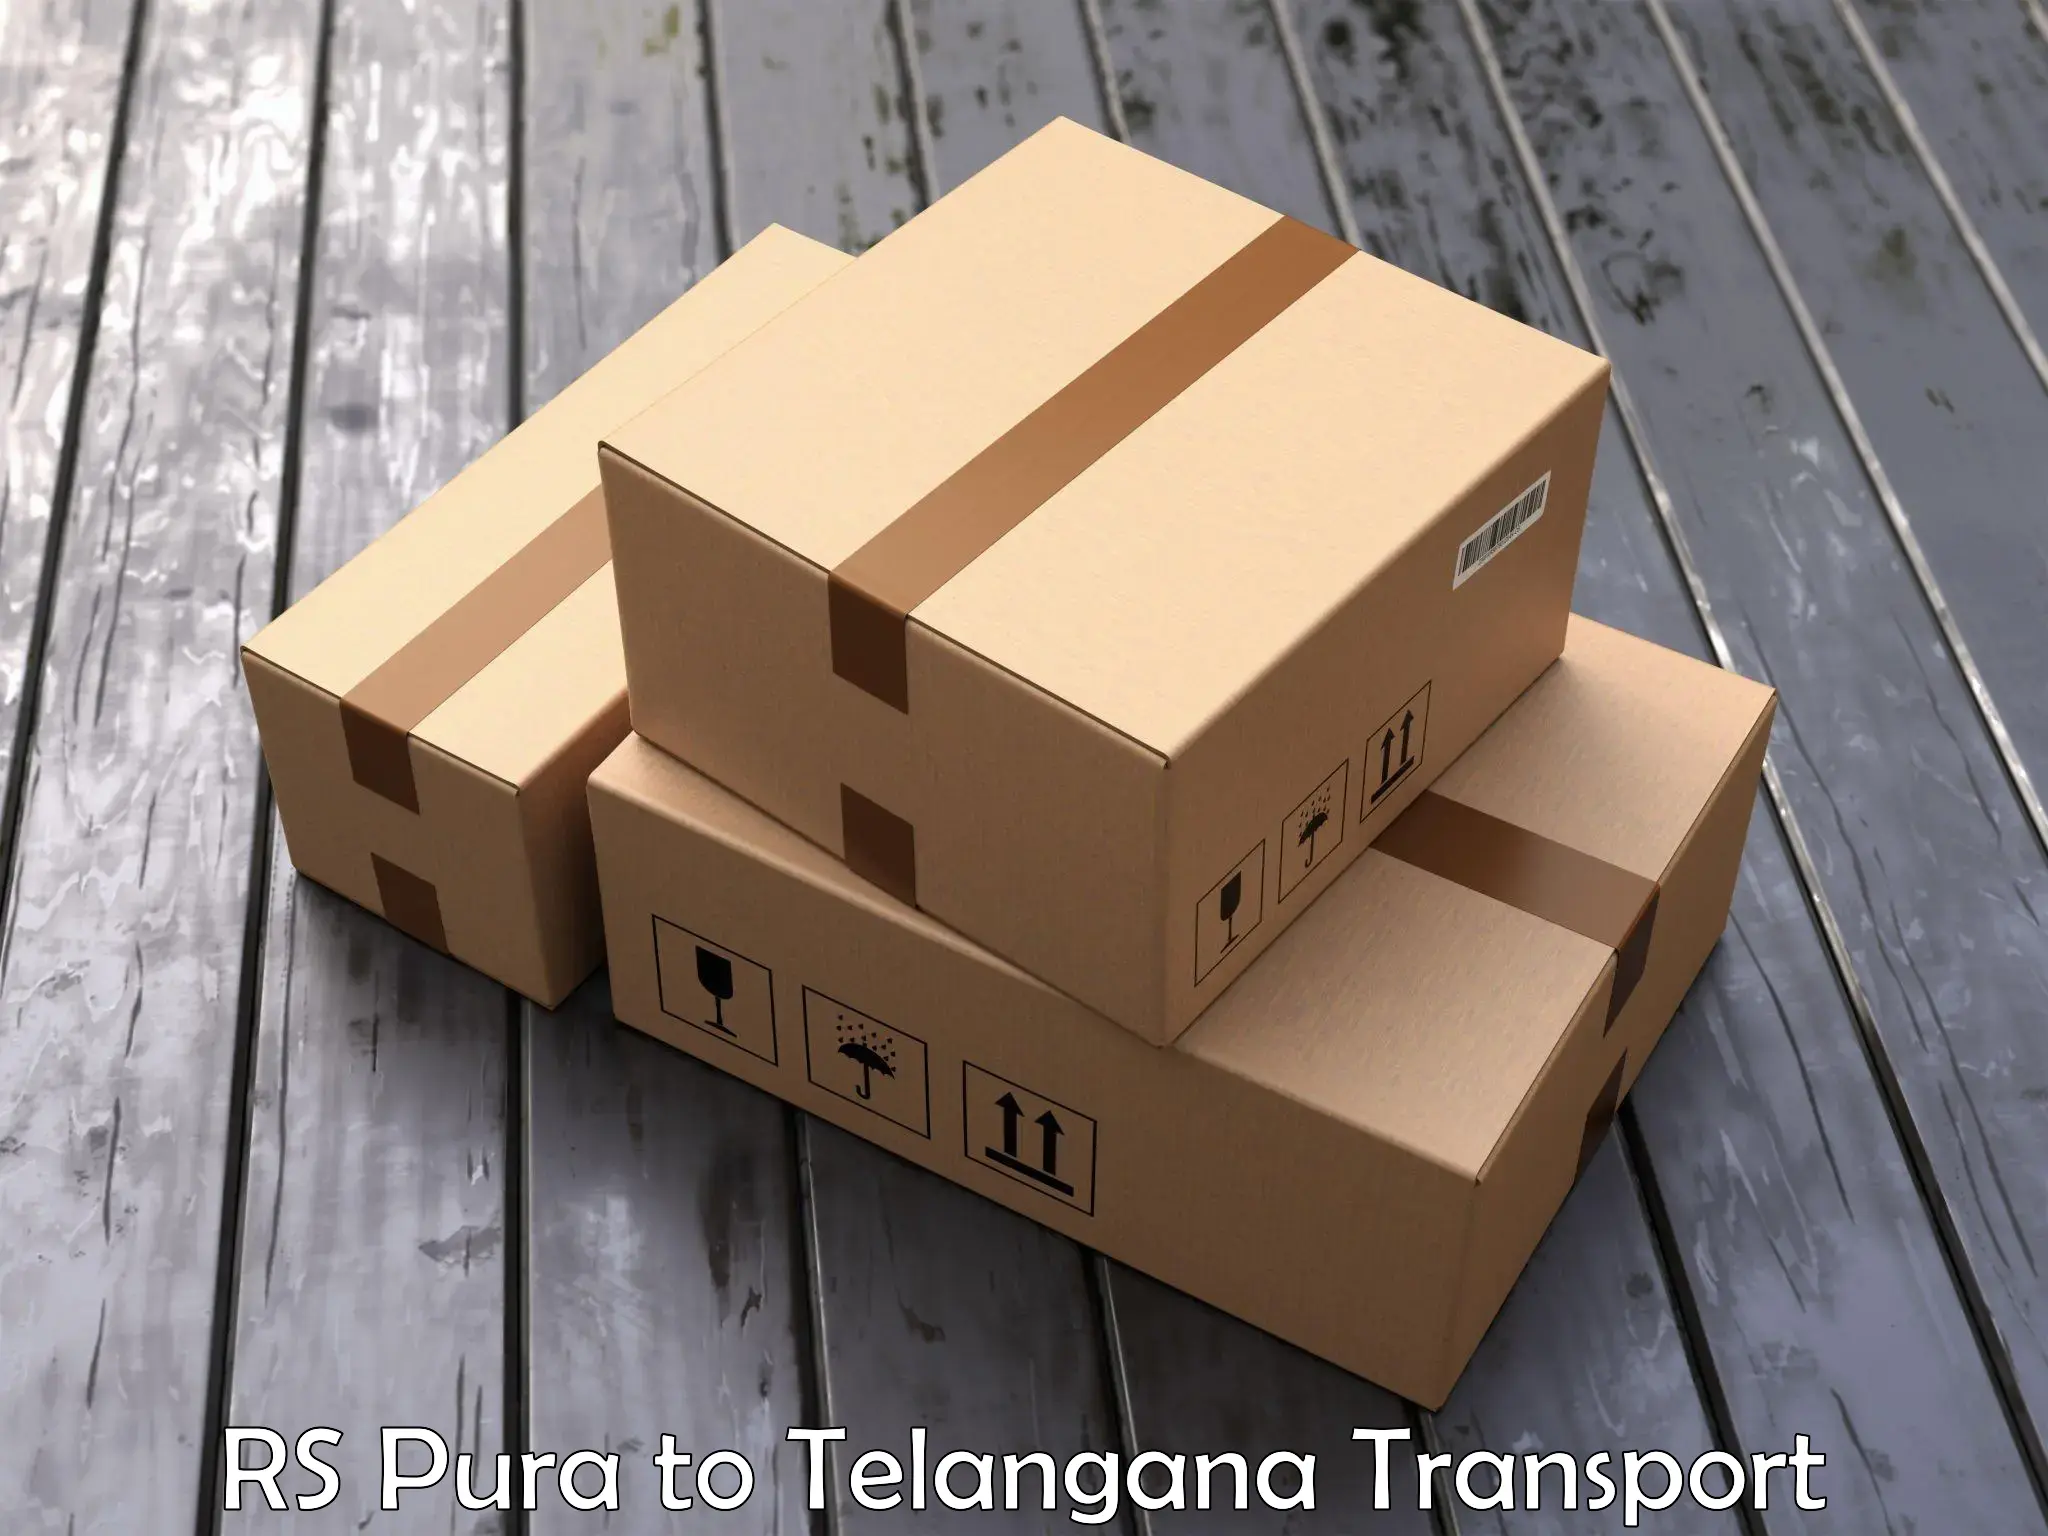 Delivery service RS Pura to Bellampalli